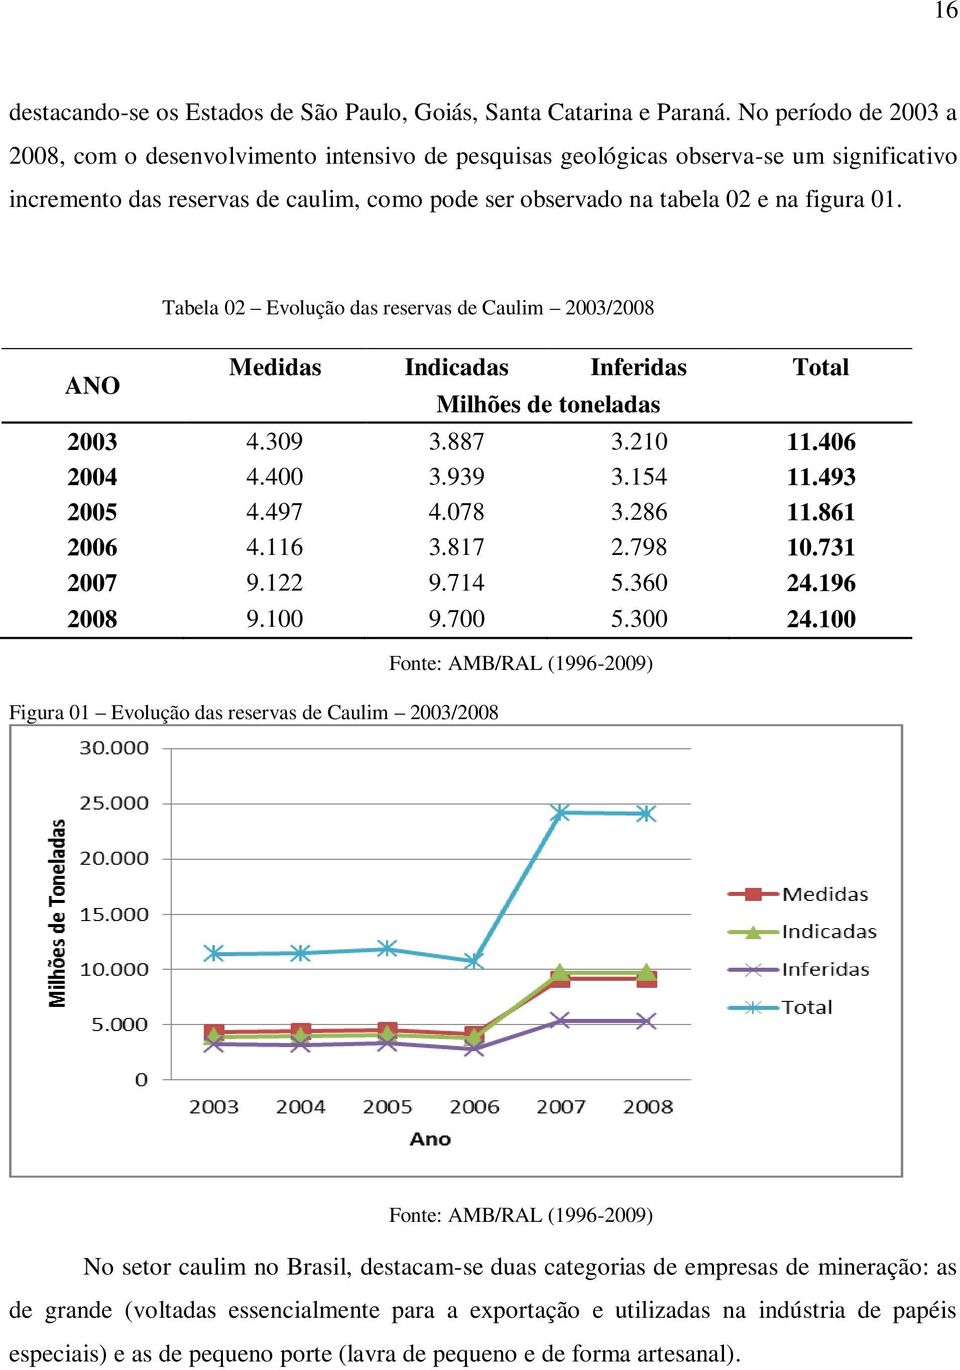 ANO Tabela 02 Evolução das reservas de Caulim 2003/2008 Medidas Indicadas Inferidas Total Figura 01 Evolução das reservas de Caulim 2003/2008 Milhões de toneladas 2003 4.309 3.887 3.210 11.406 2004 4.